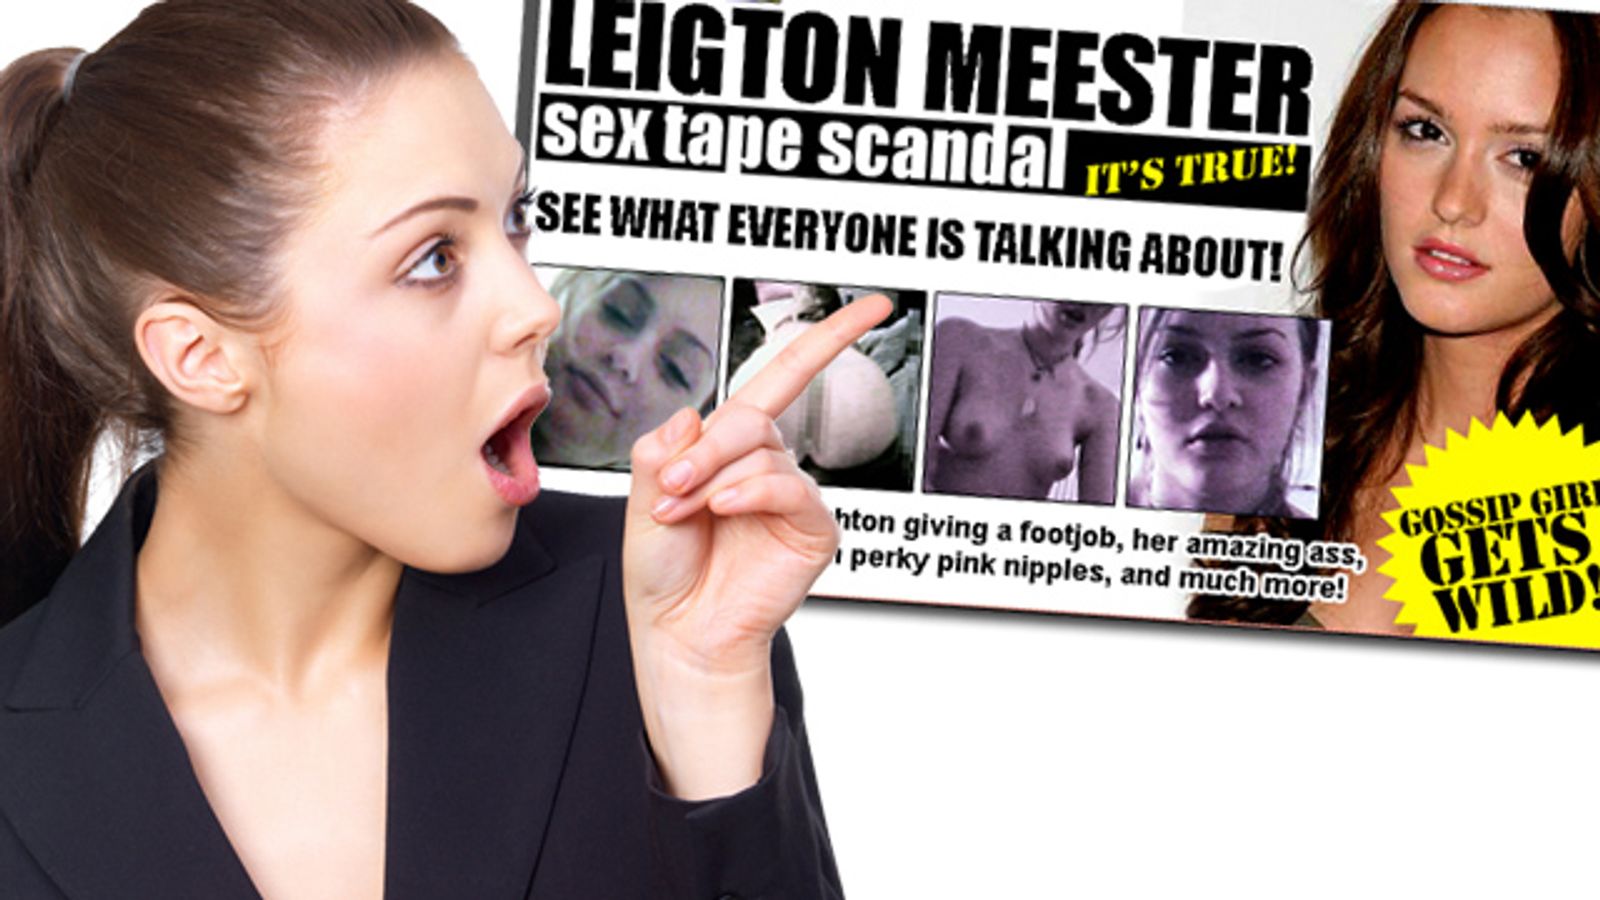 ‘Gossip Girl’ Leighton Meester in Sex Tape